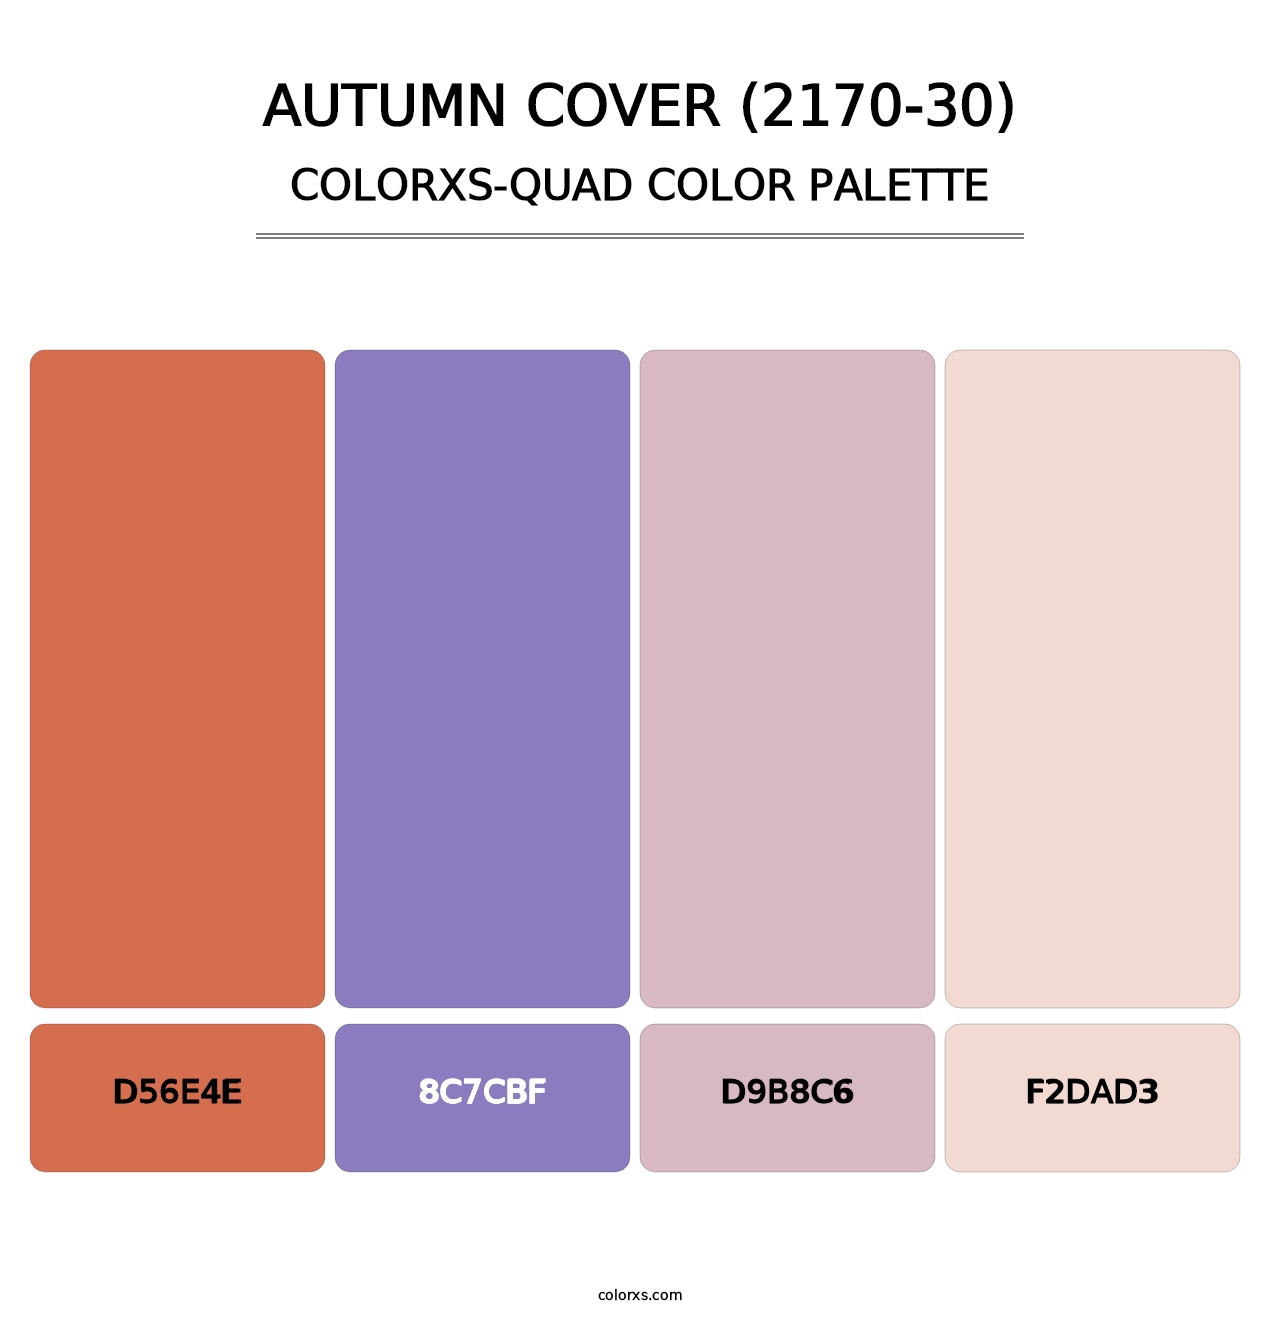 Autumn Cover (2170-30) - Colorxs Quad Palette